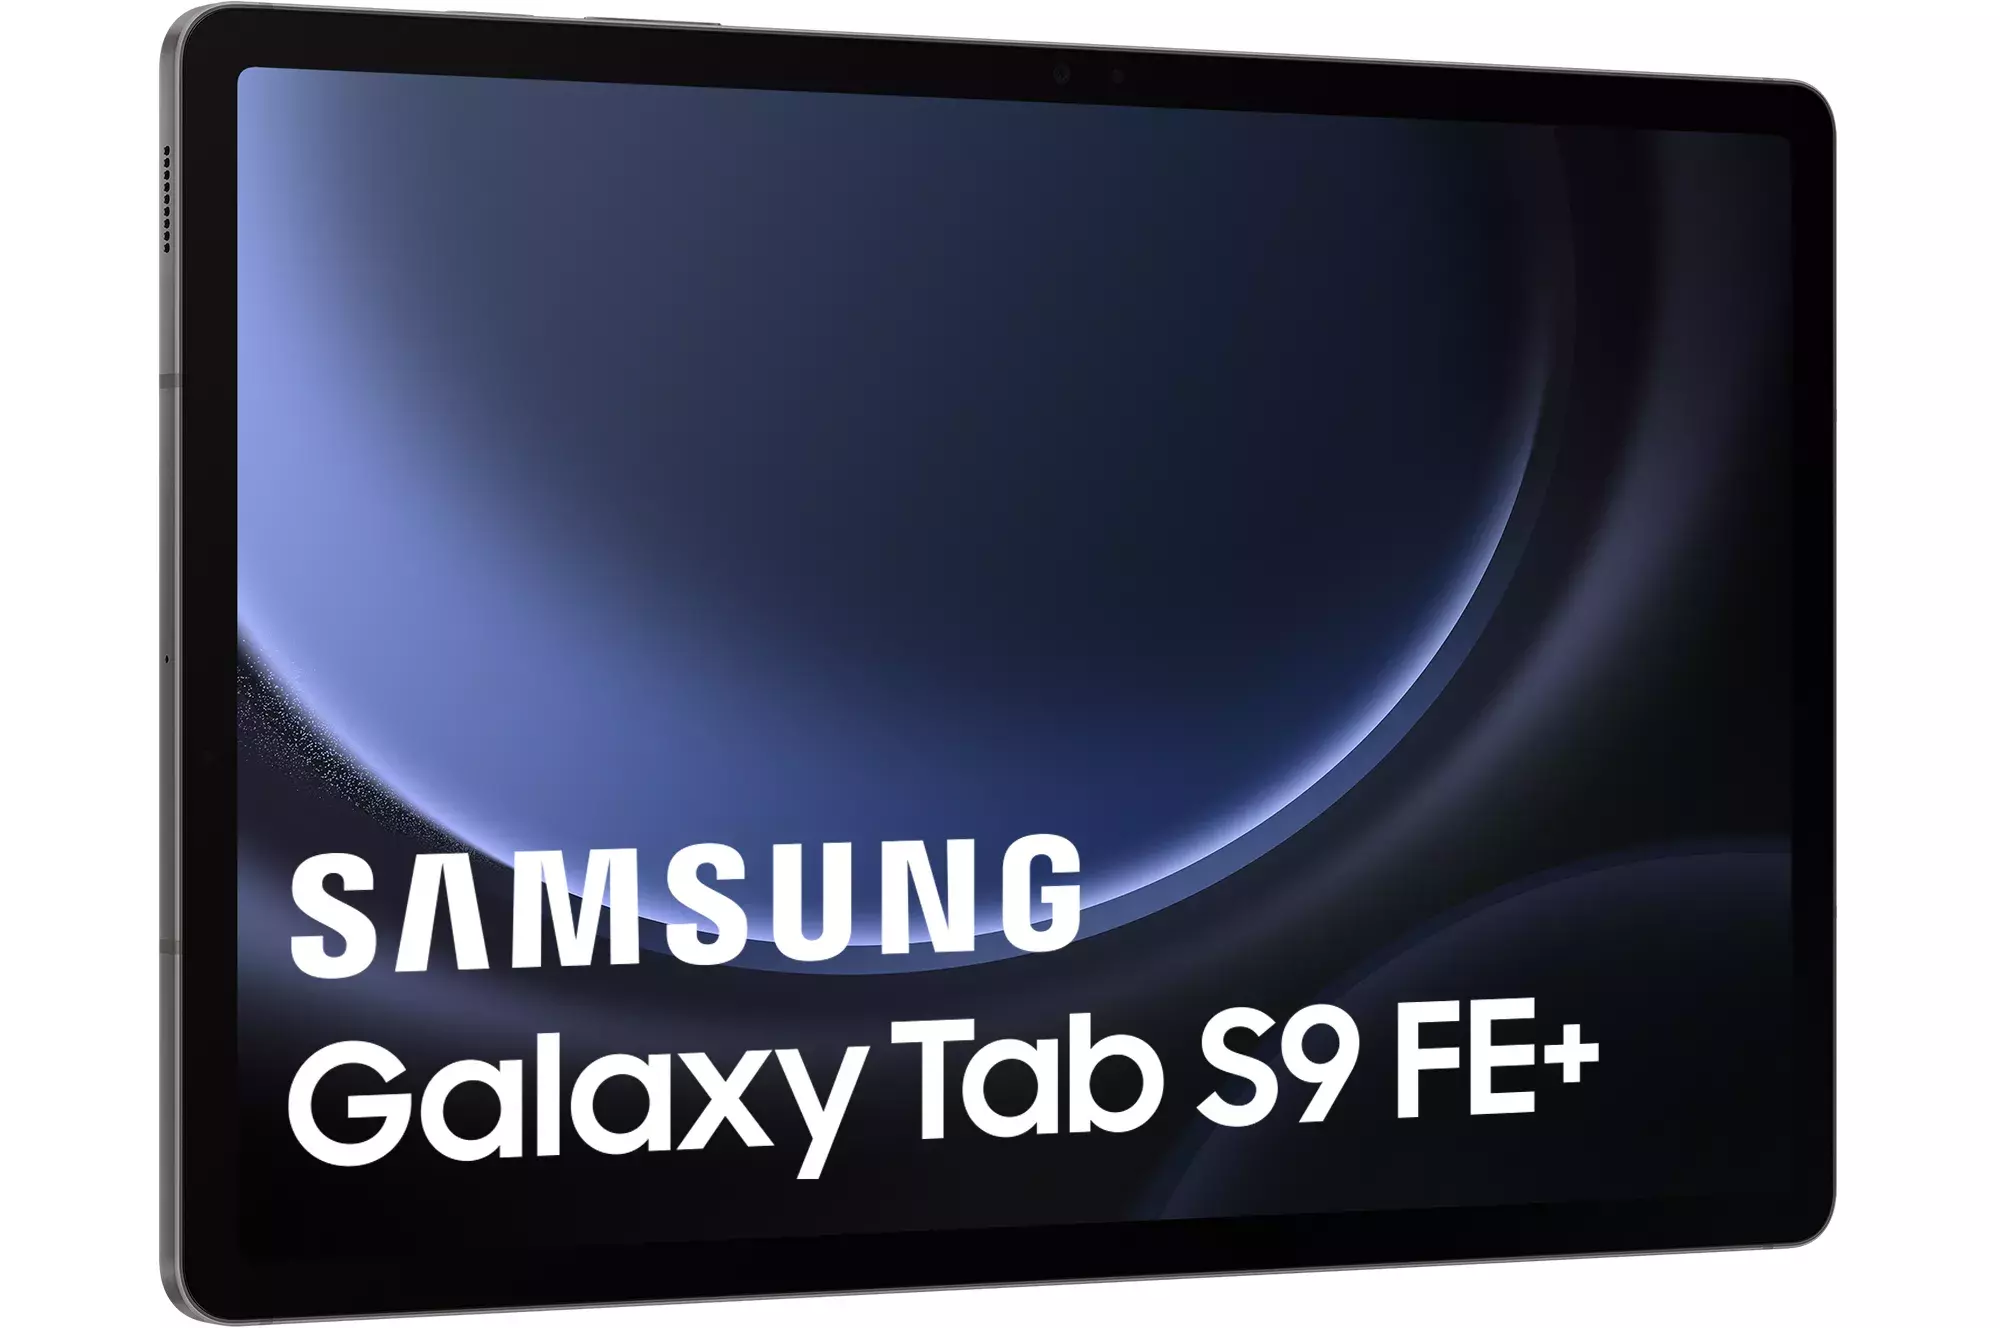 Samsung Galaxy Tab S9 FE and Galaxy Tab S9 FE Plus designs